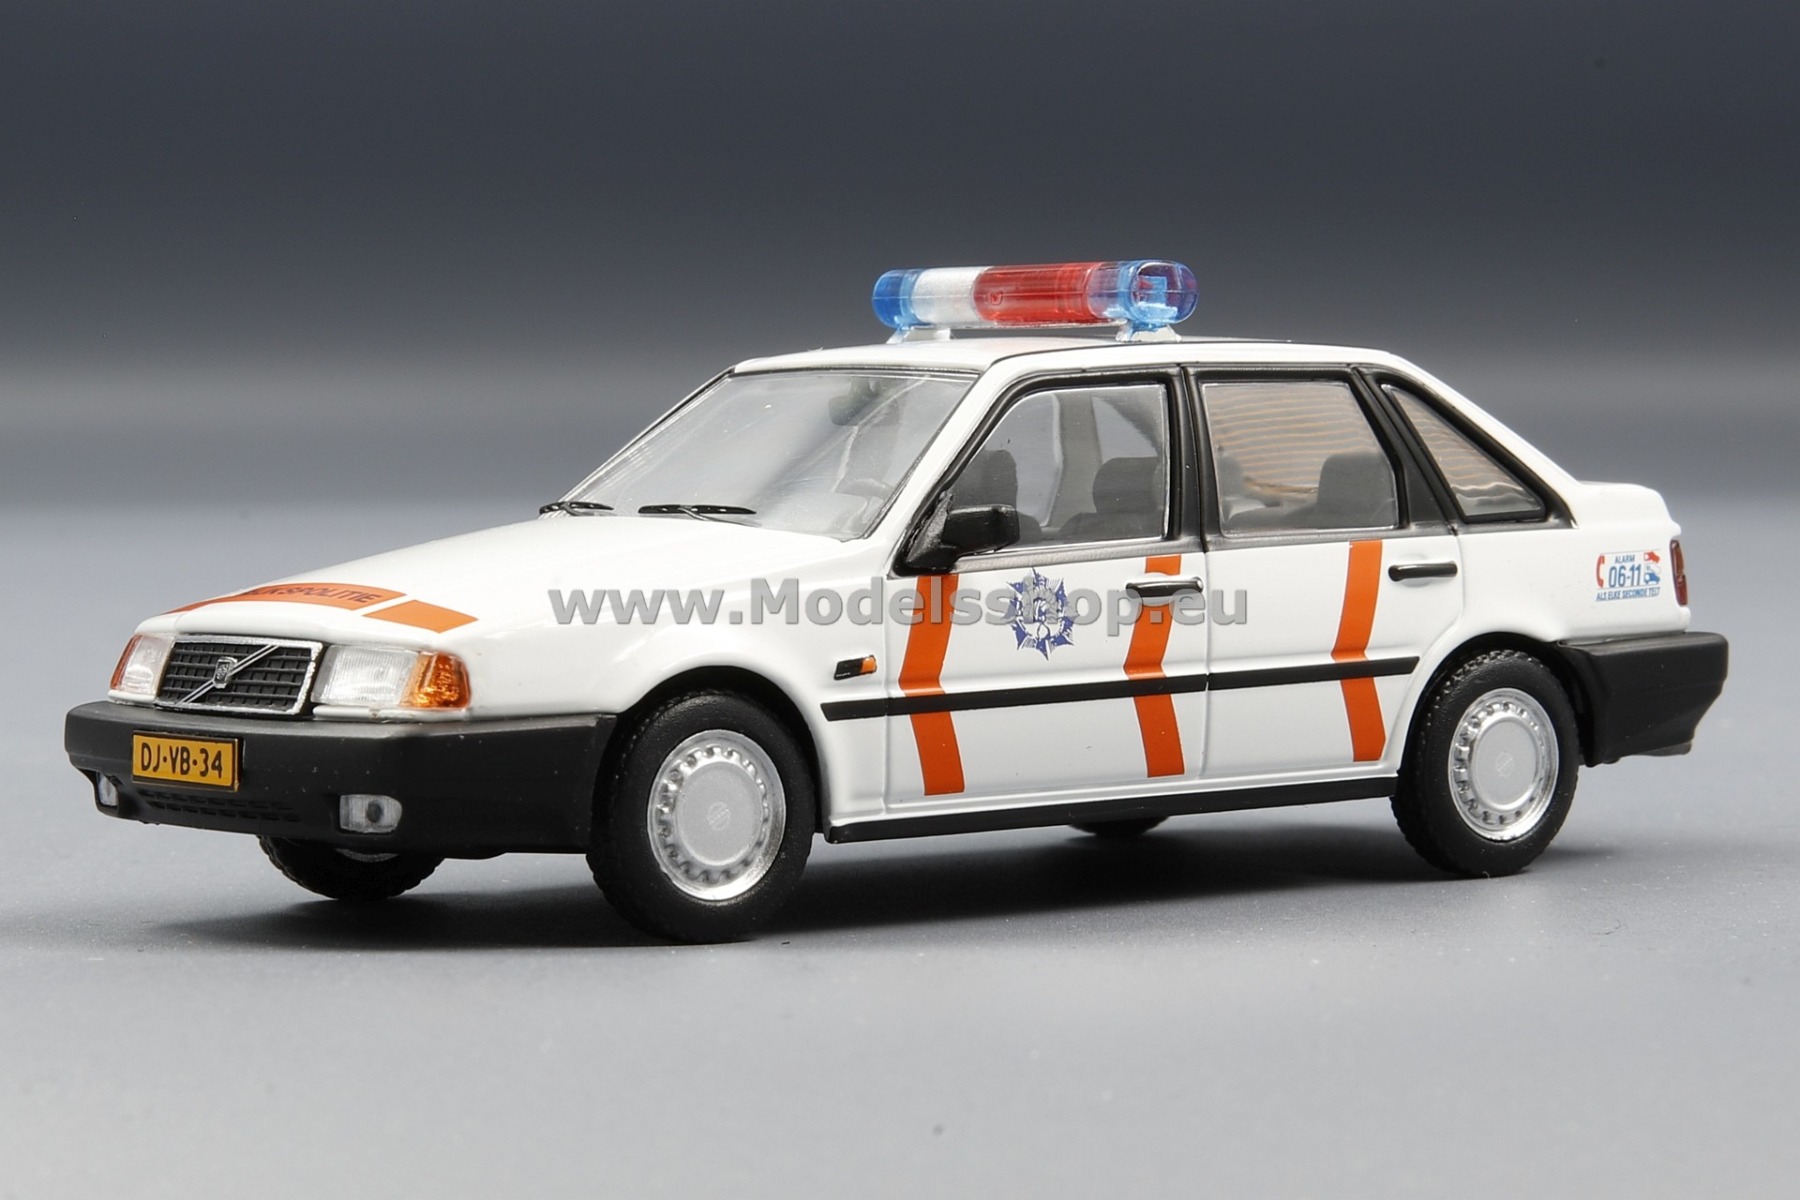 Volvo 440 1990, Rijkspolitie / Dutch state police